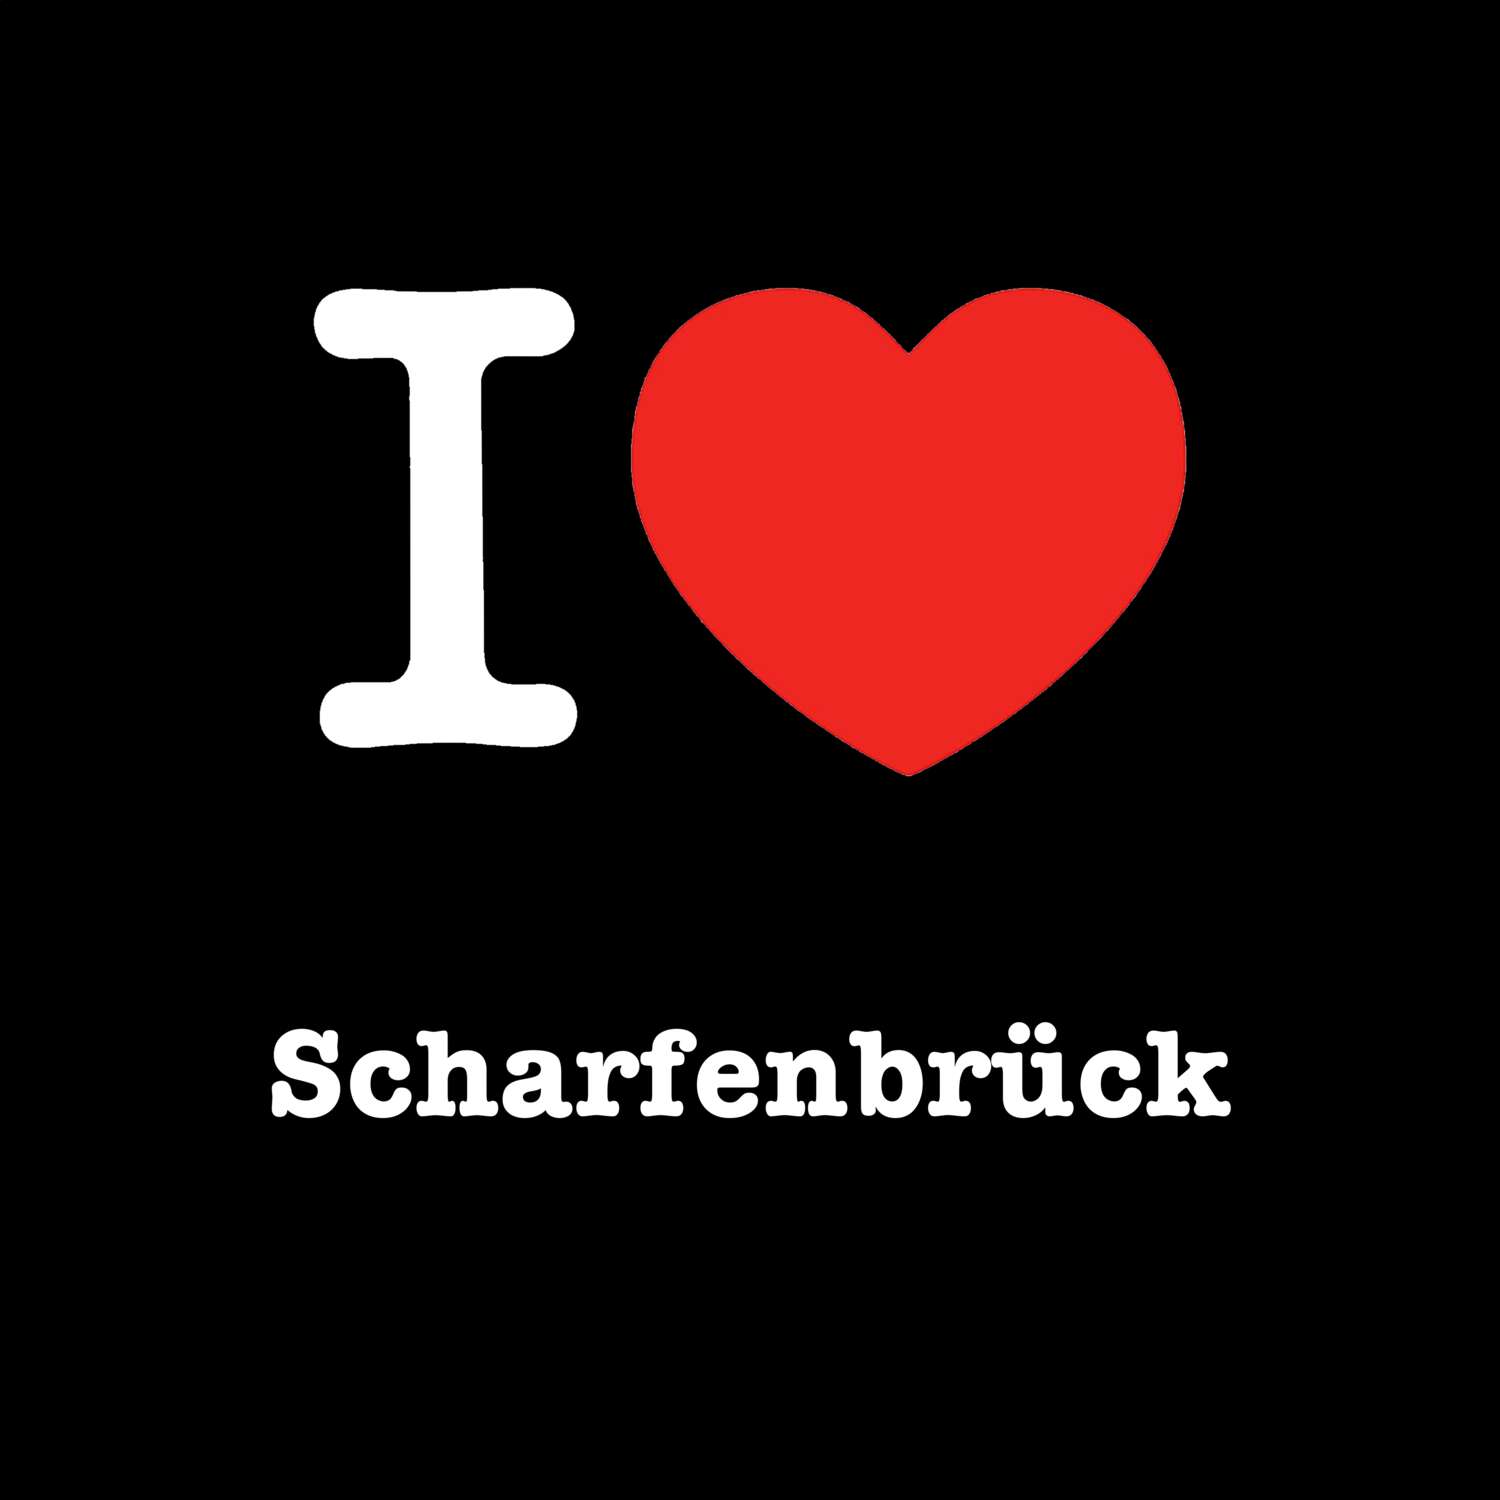 Scharfenbrück T-Shirt »I love«